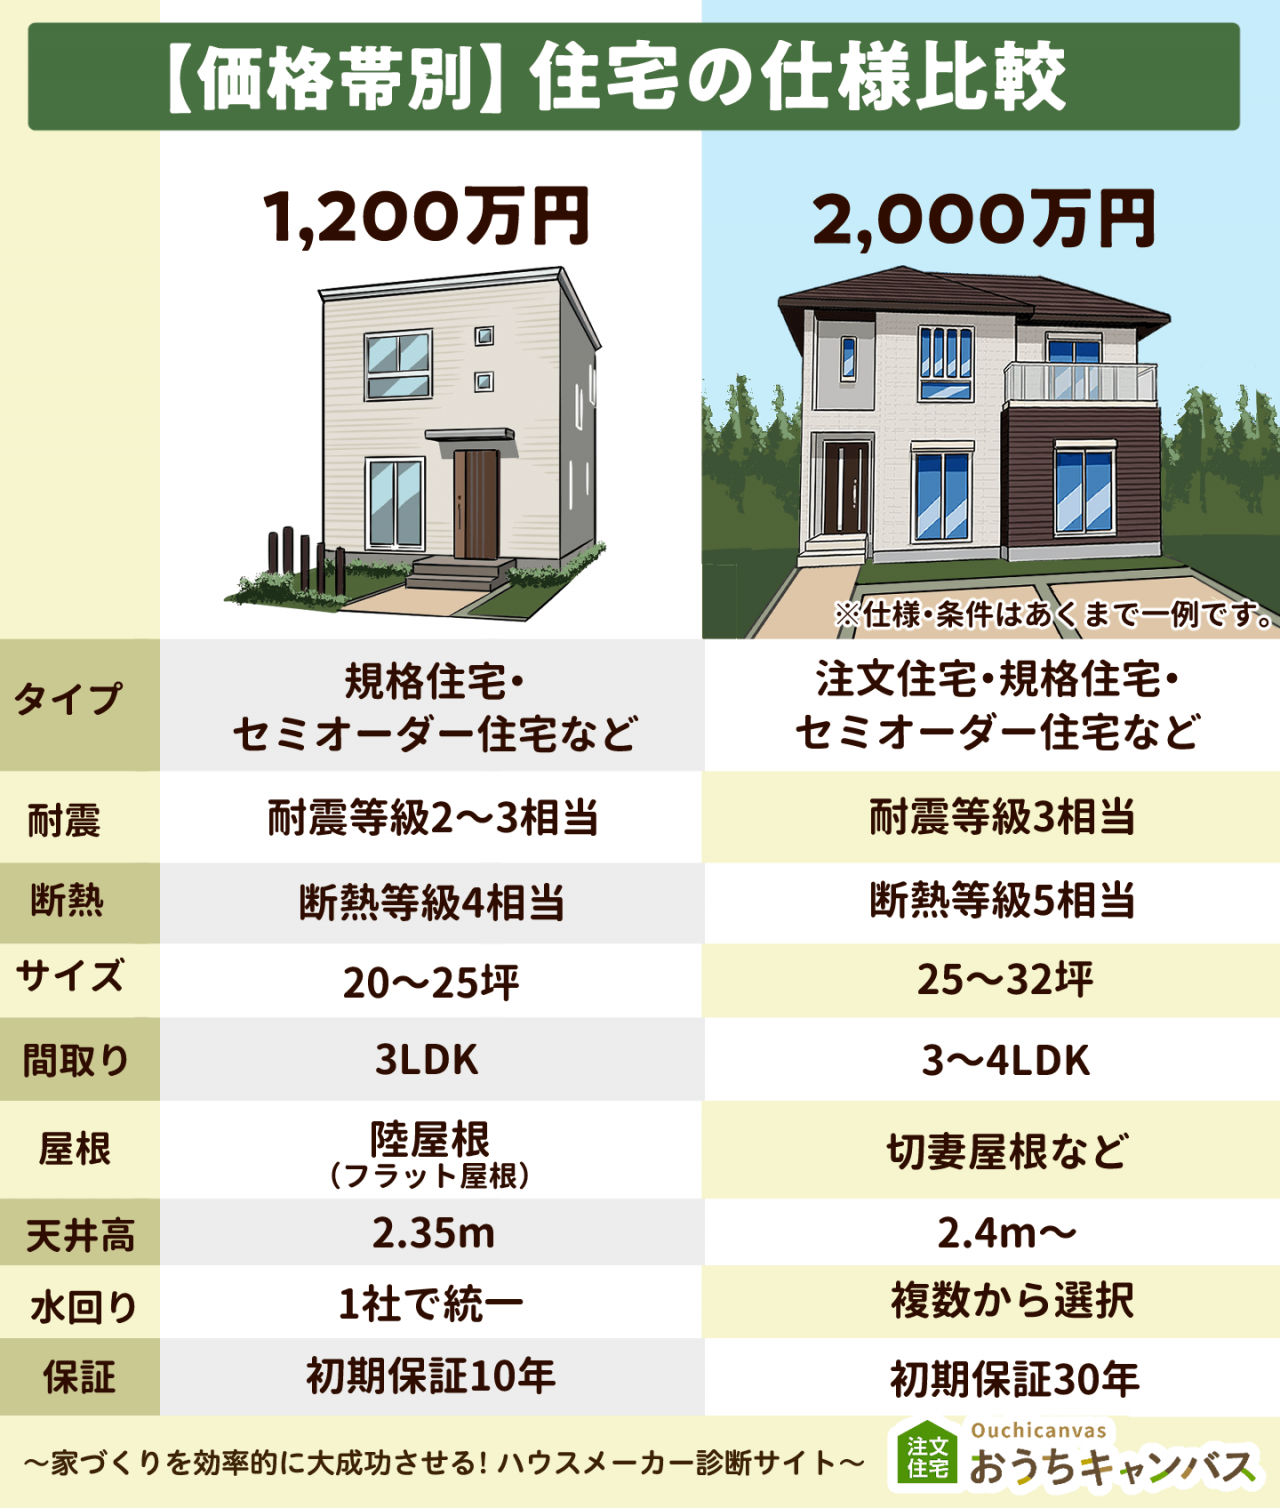 1,300万円の家と2,000万円の家の比較